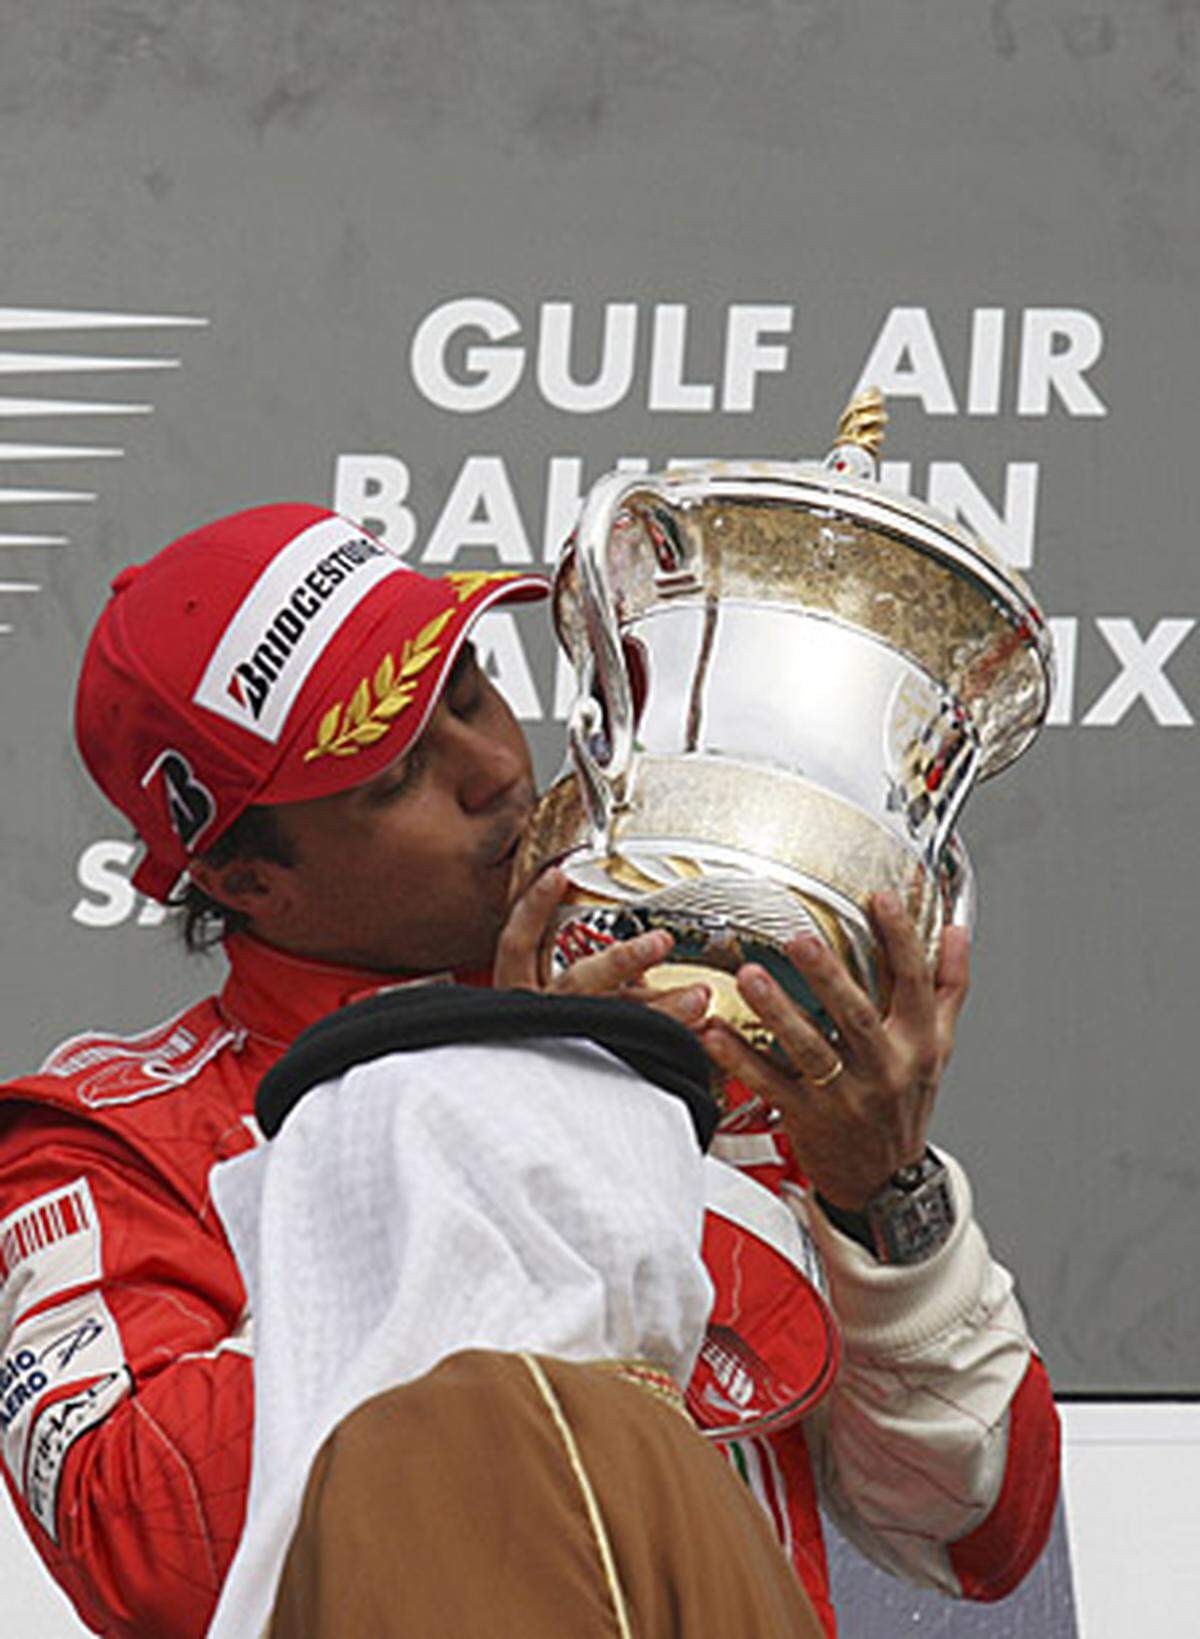 Streckenbezeichnung: Bahrain International Circuit  Streckenlänge: 5,412 km  Runden: 57  Renndistanz: 308,484 Kilometer  Sieger 2009: Jensen Button  Homepage: http://www.bahraingp.com.bh